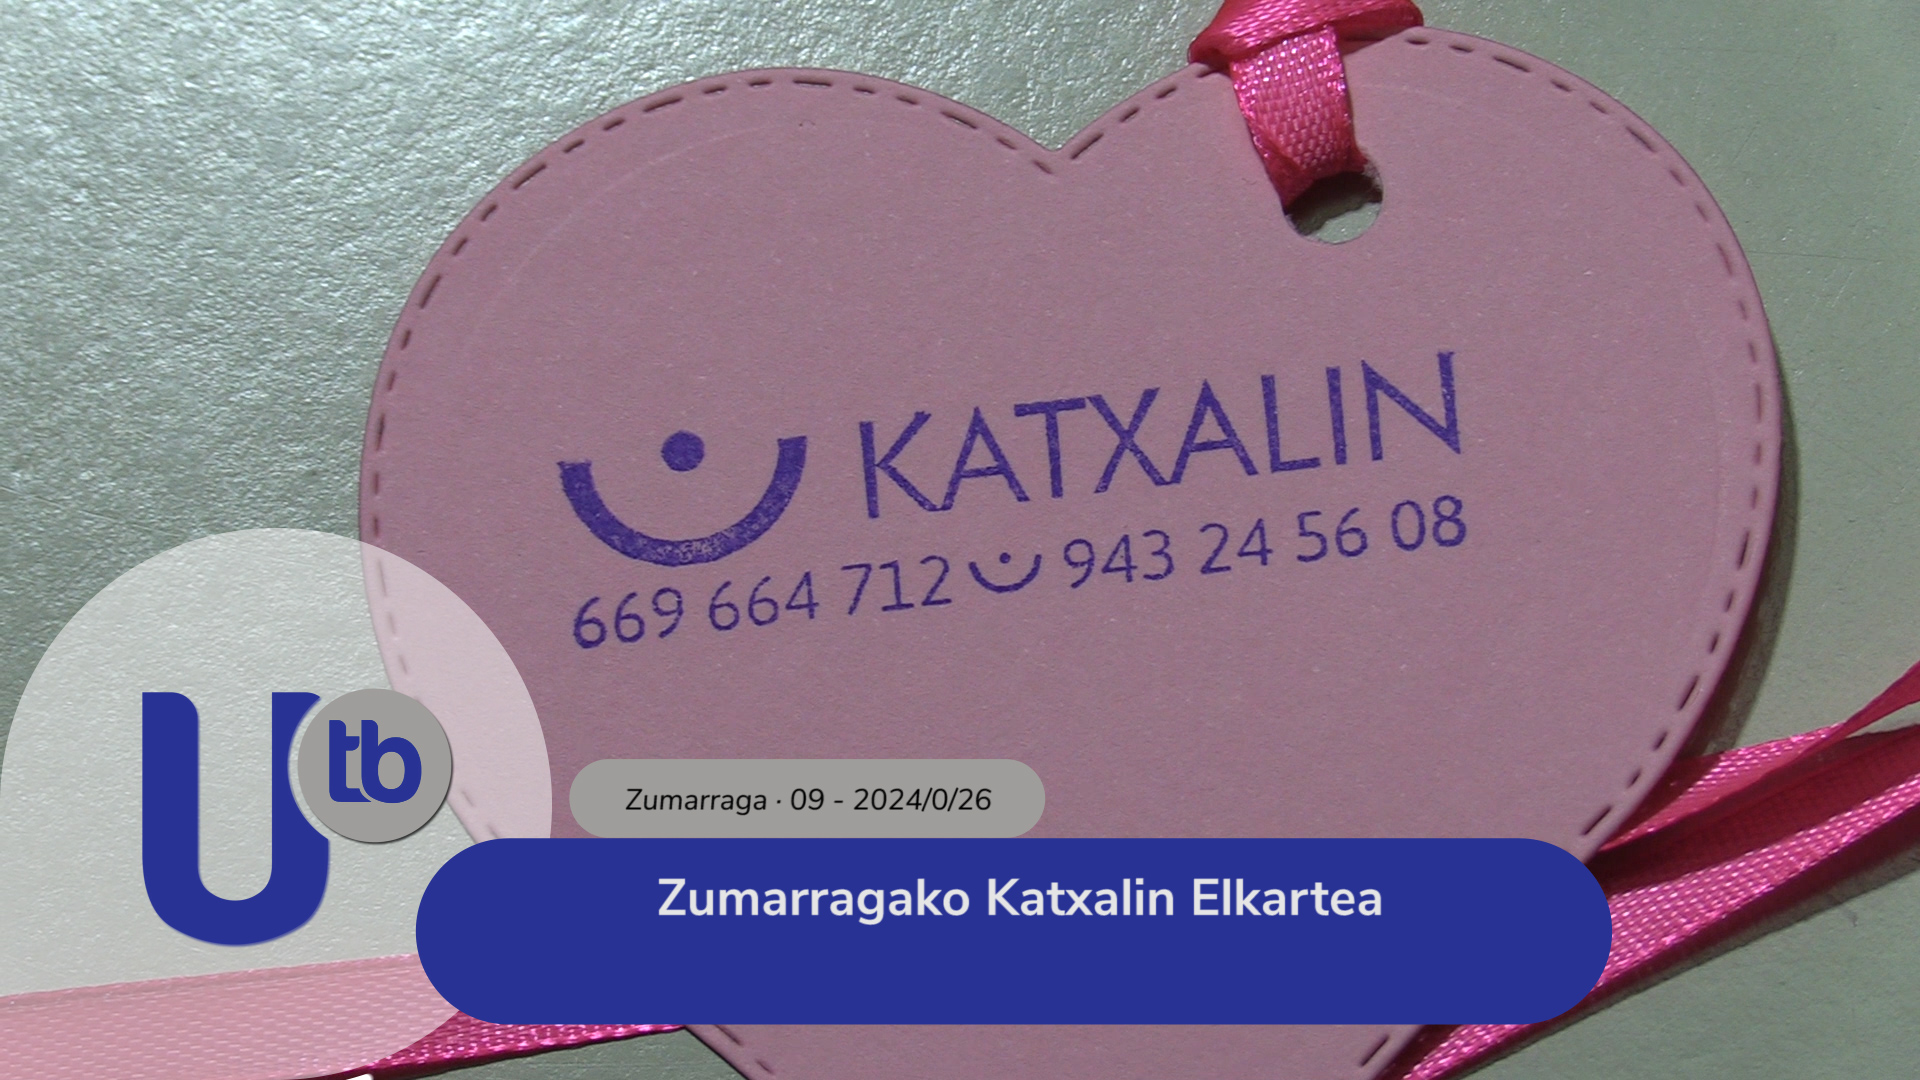 Asociación Katxalin de Zumarraga / Zumarragako Katxalin Elkartea